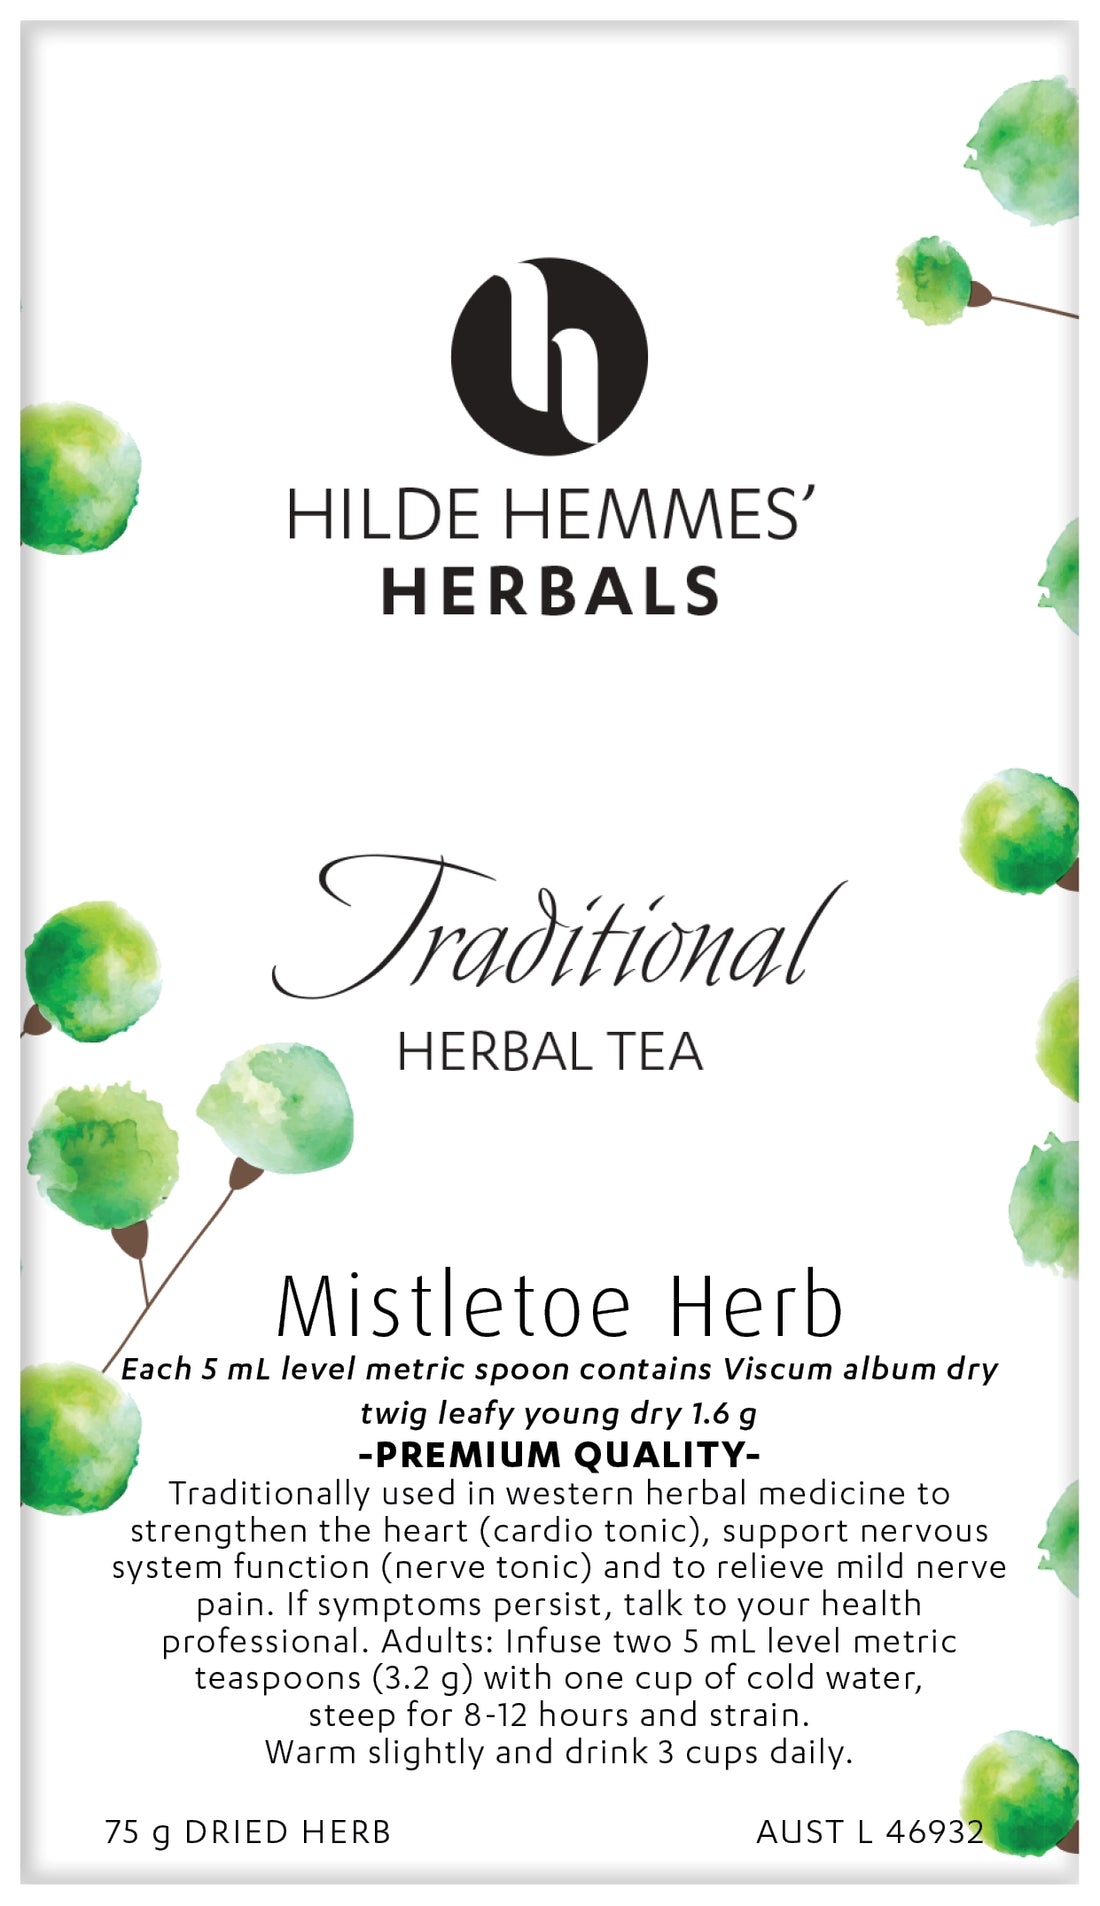 Hilde Hemmes Herbal&